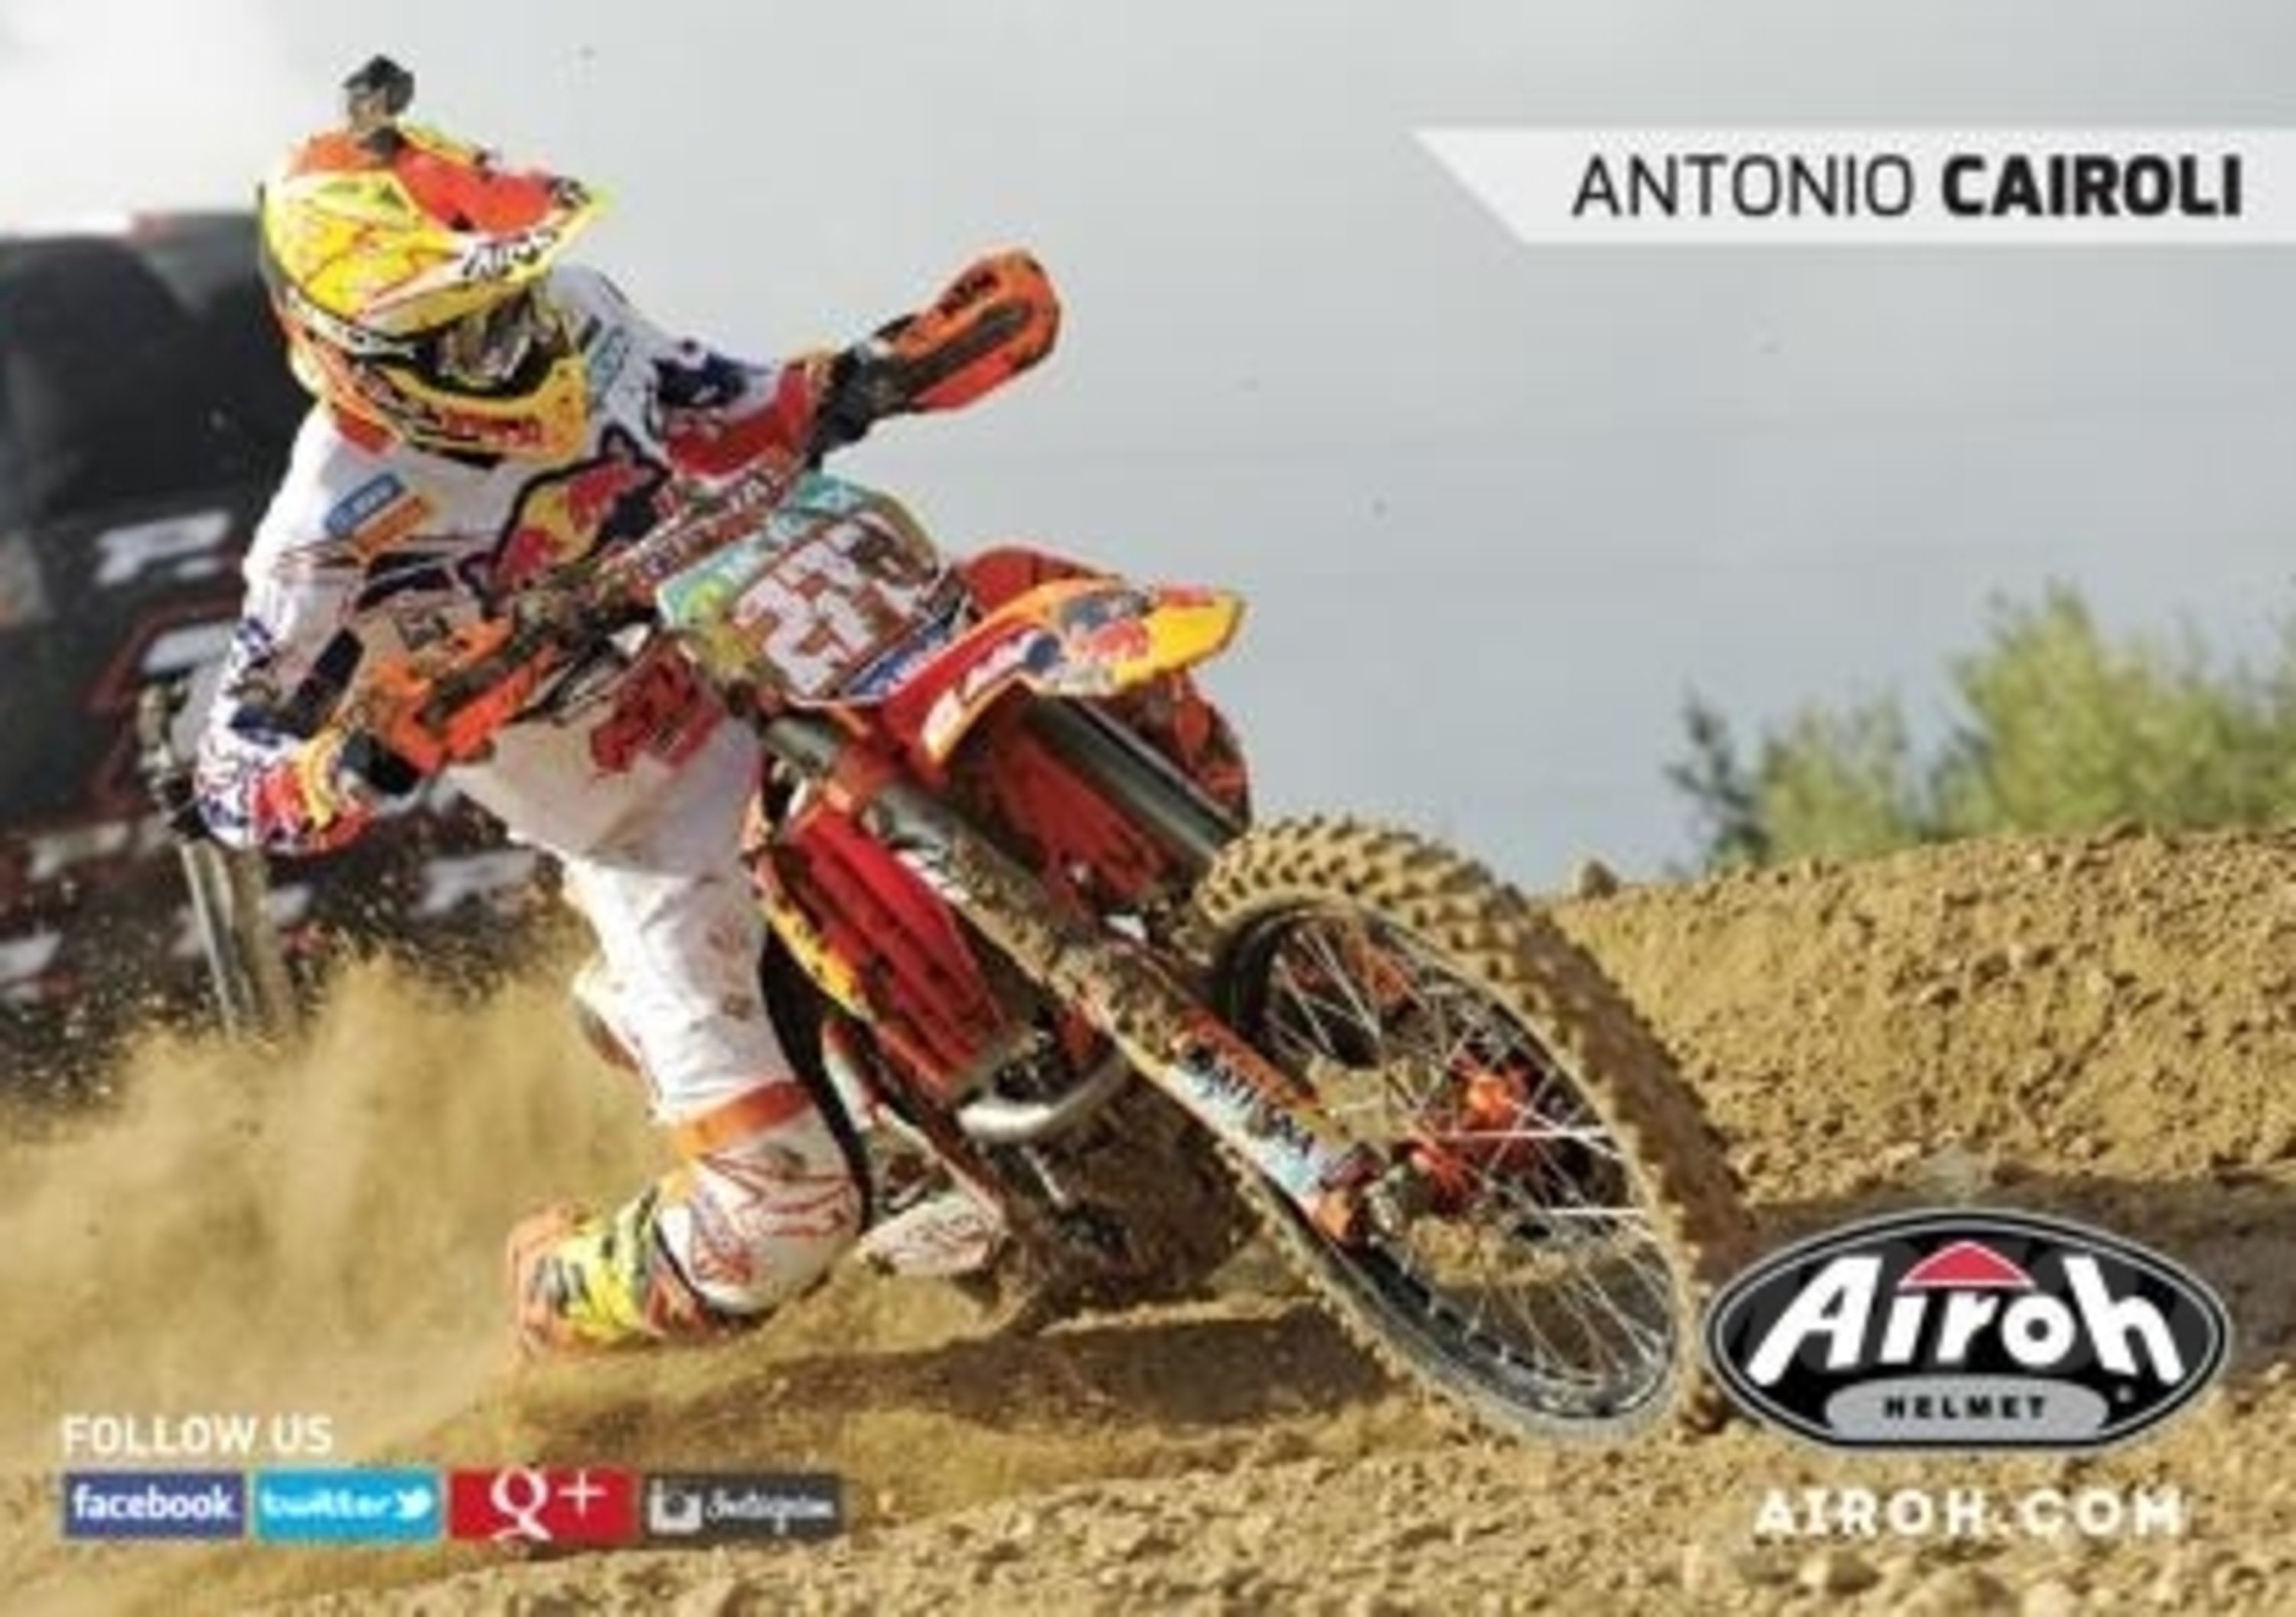 Airoh  e Bruno Moto presentano l&rsquo;evento benefico Motocross Freestyle